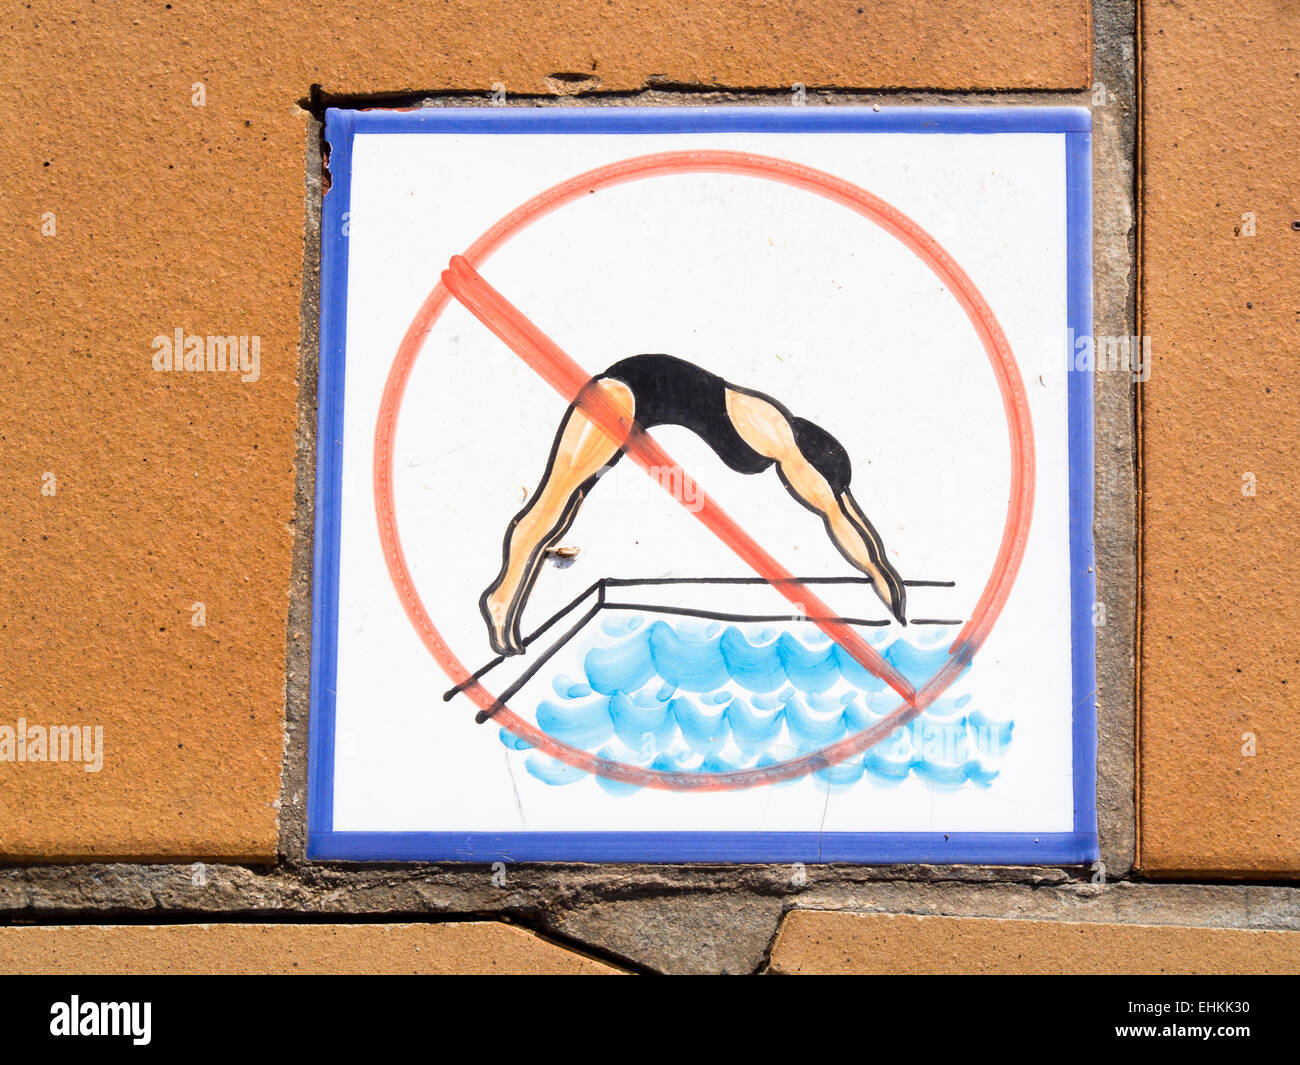 Aucun signe de plongée, avec des carreaux peints photo de femme plongée, un enseignement dans de nombreux hôtels, Corralejo Fuerteventura Espagne Banque D'Images